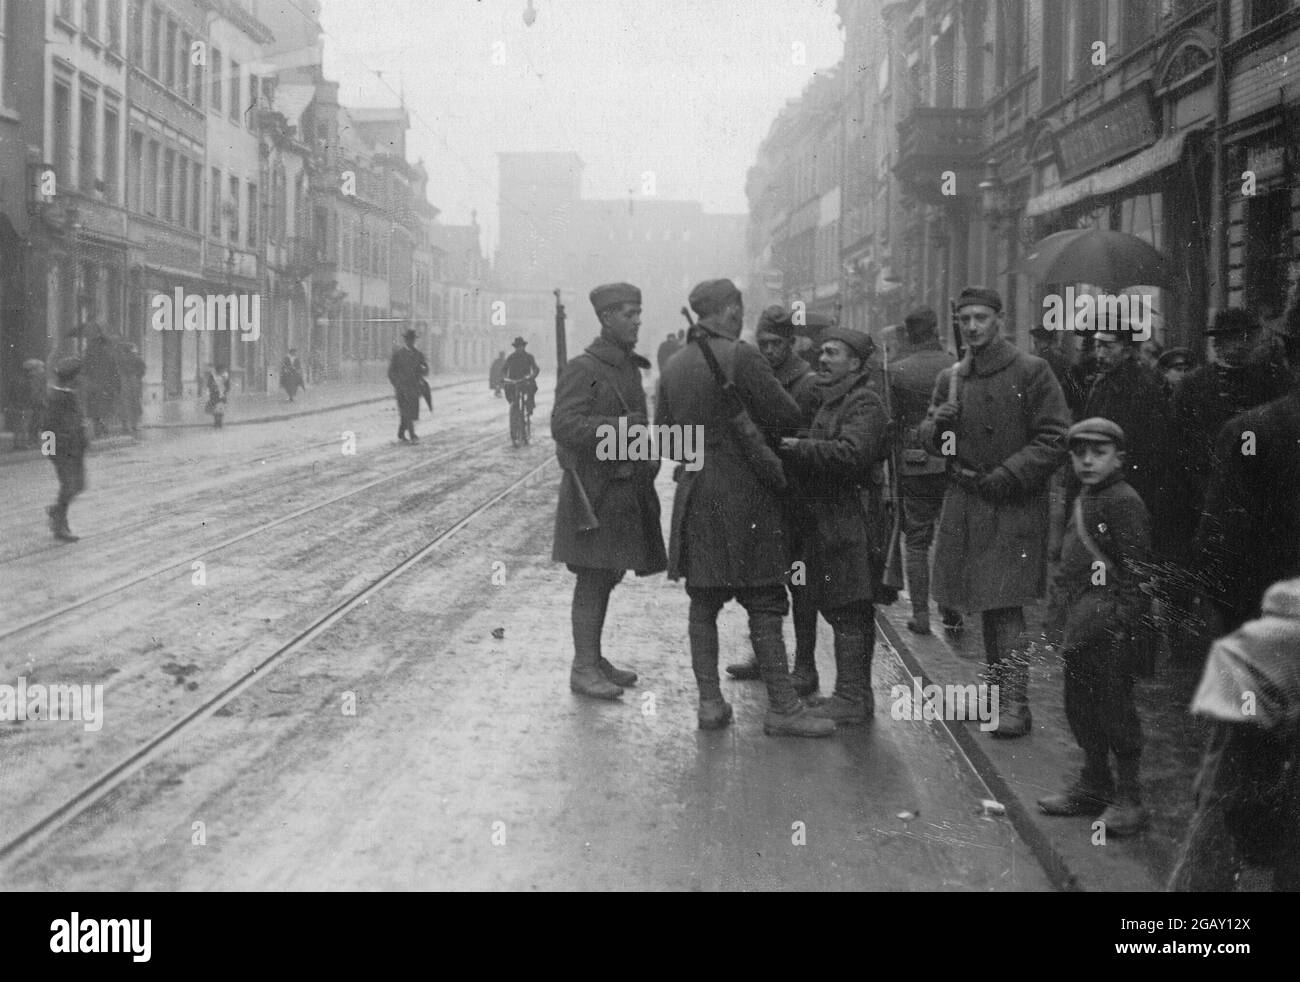 TREVES, GERMANIA - 04 maggio 1919 - Esercito dell'occupazione - soldati americani a Treves, Germania. La città di Treviri sarebbe stata anche conosciuta come Treves in E. Foto Stock